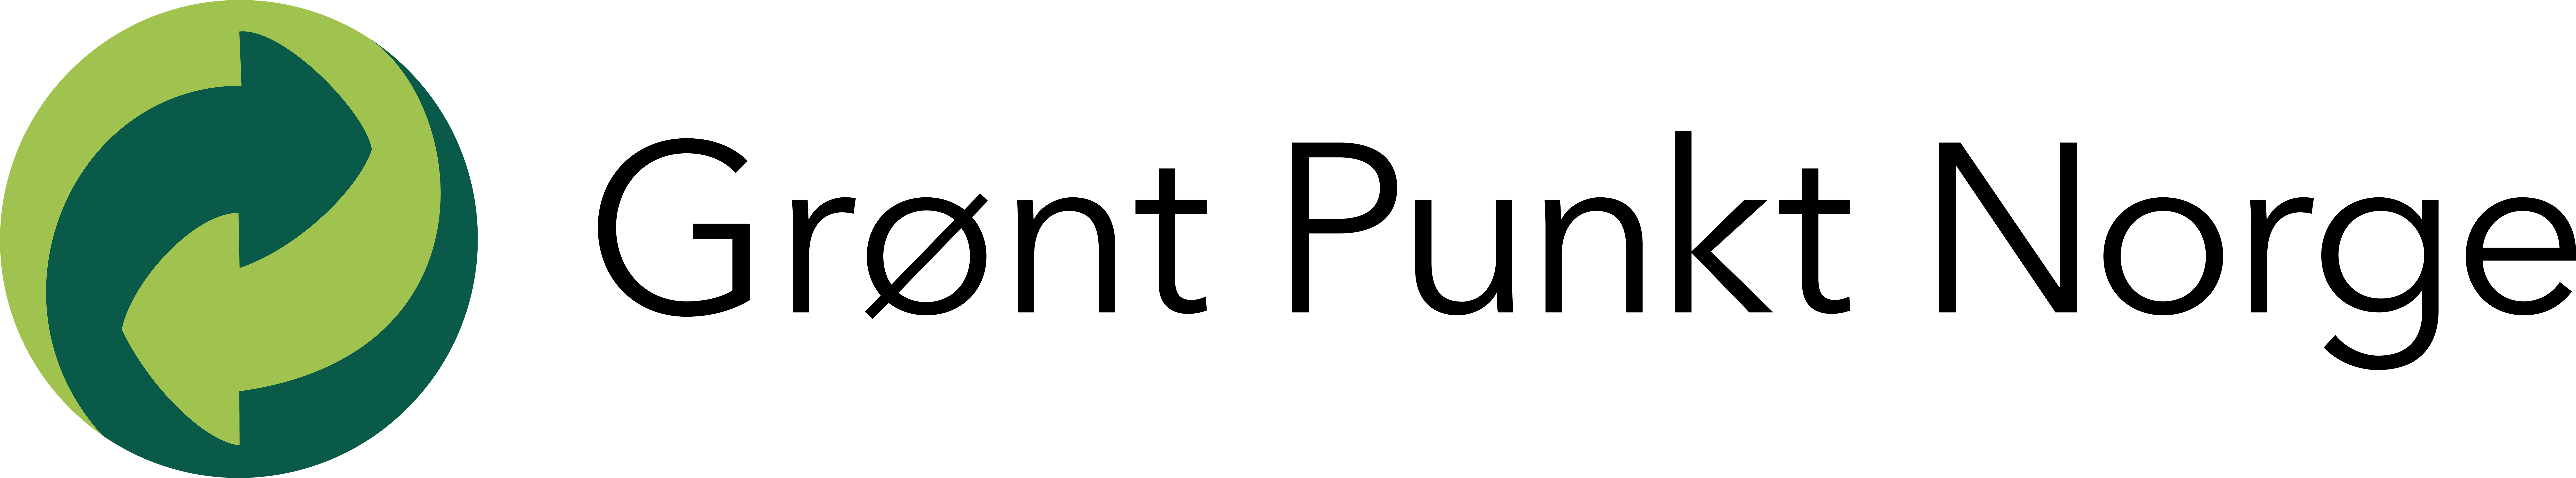 Grønt Punkt logo.Illustrasjon